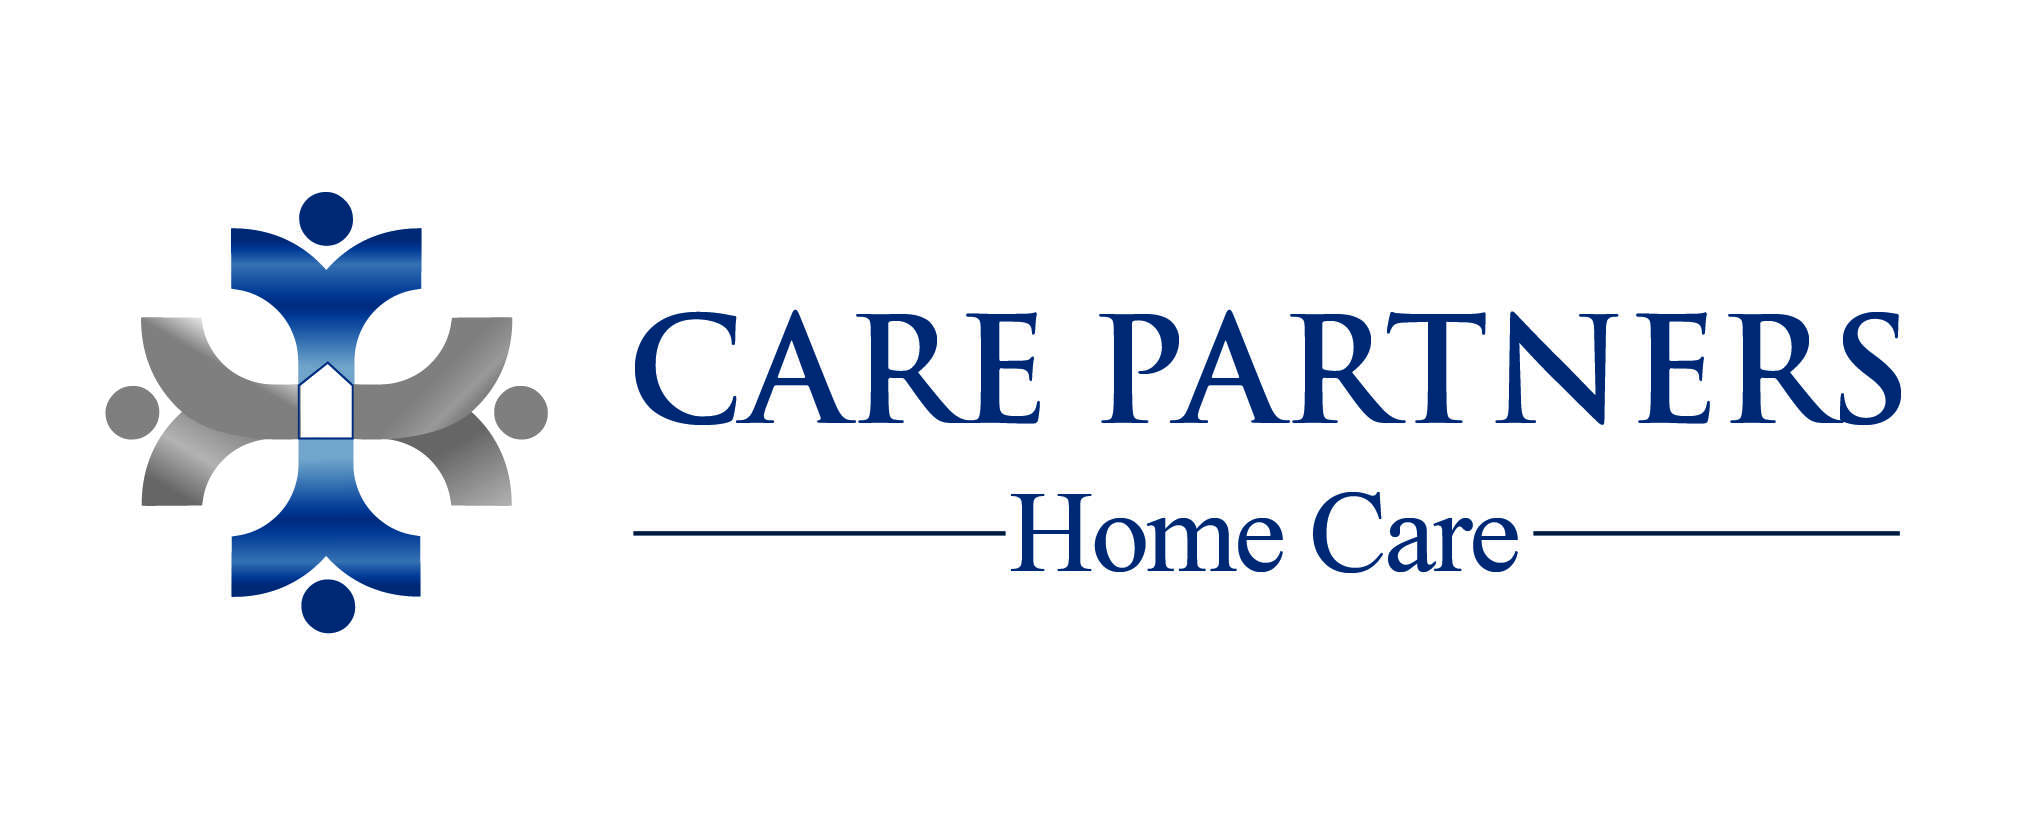 Care Partners Home Care Logo